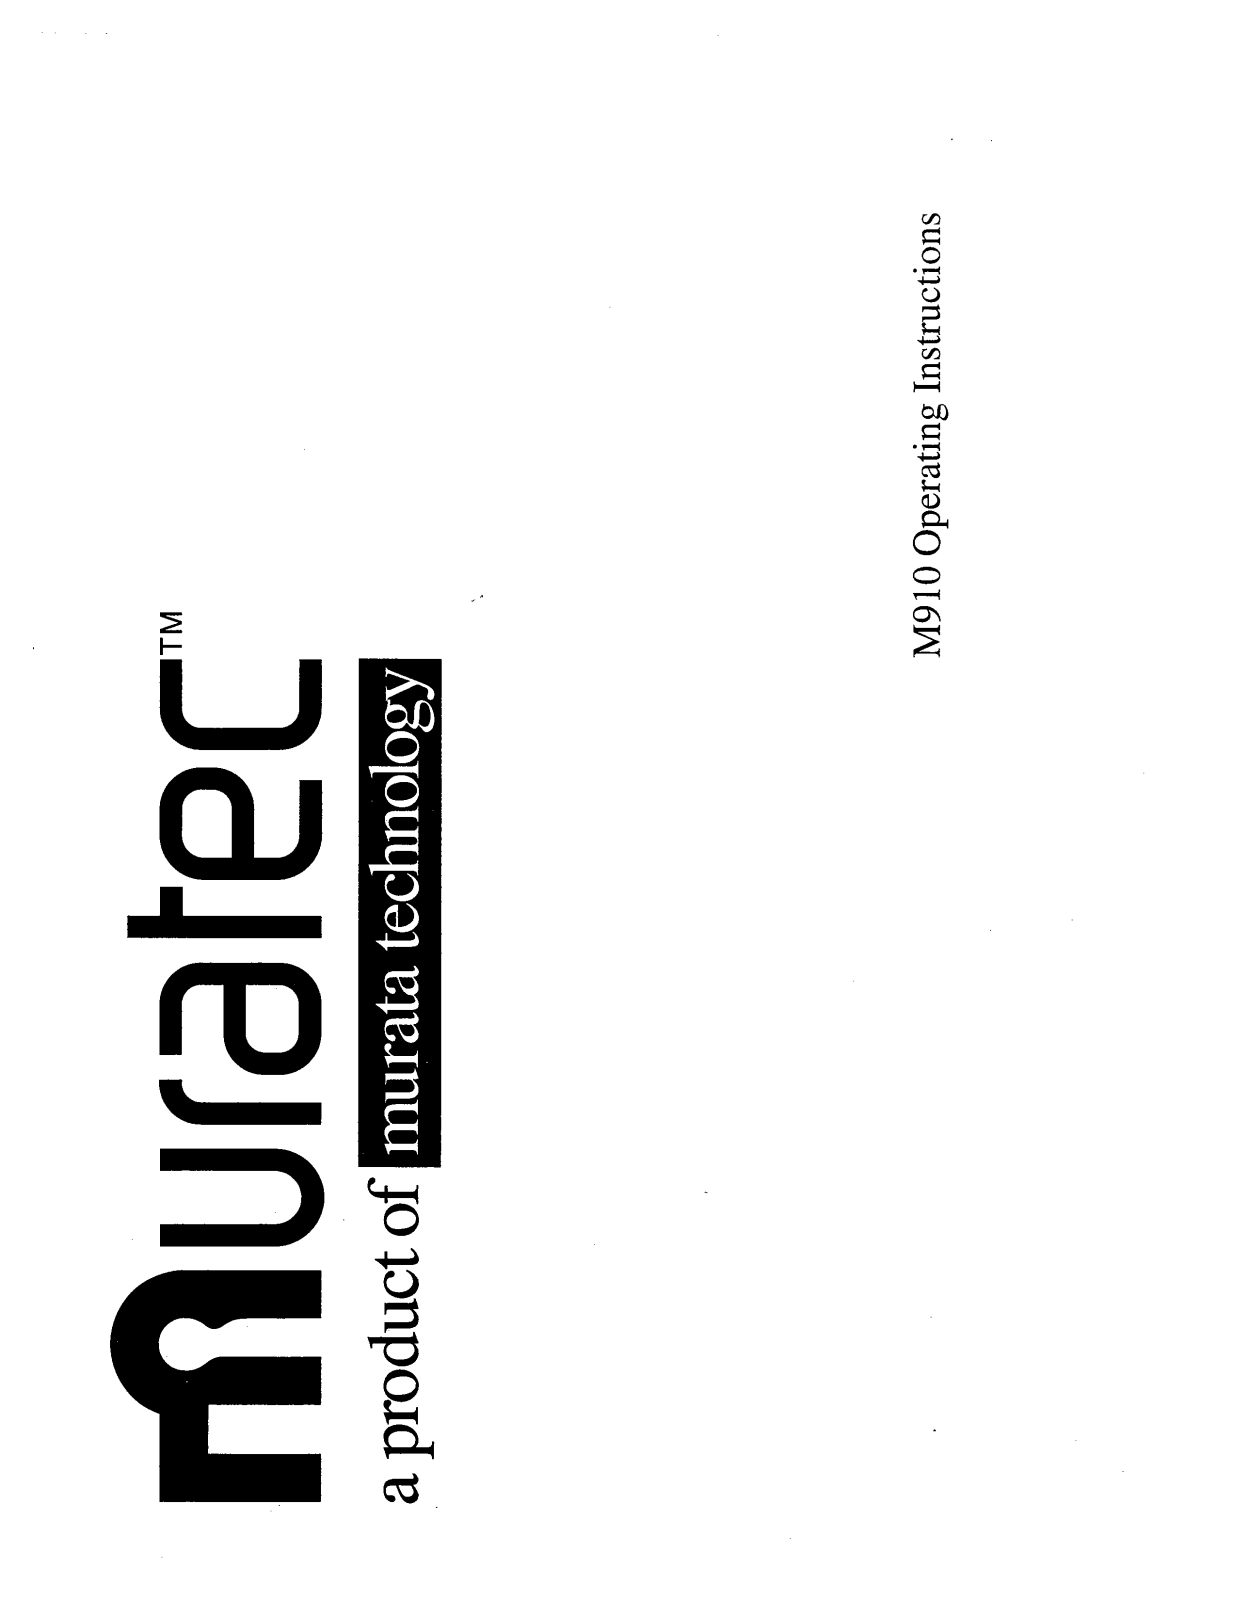 Muratec M-910 Operating Manual